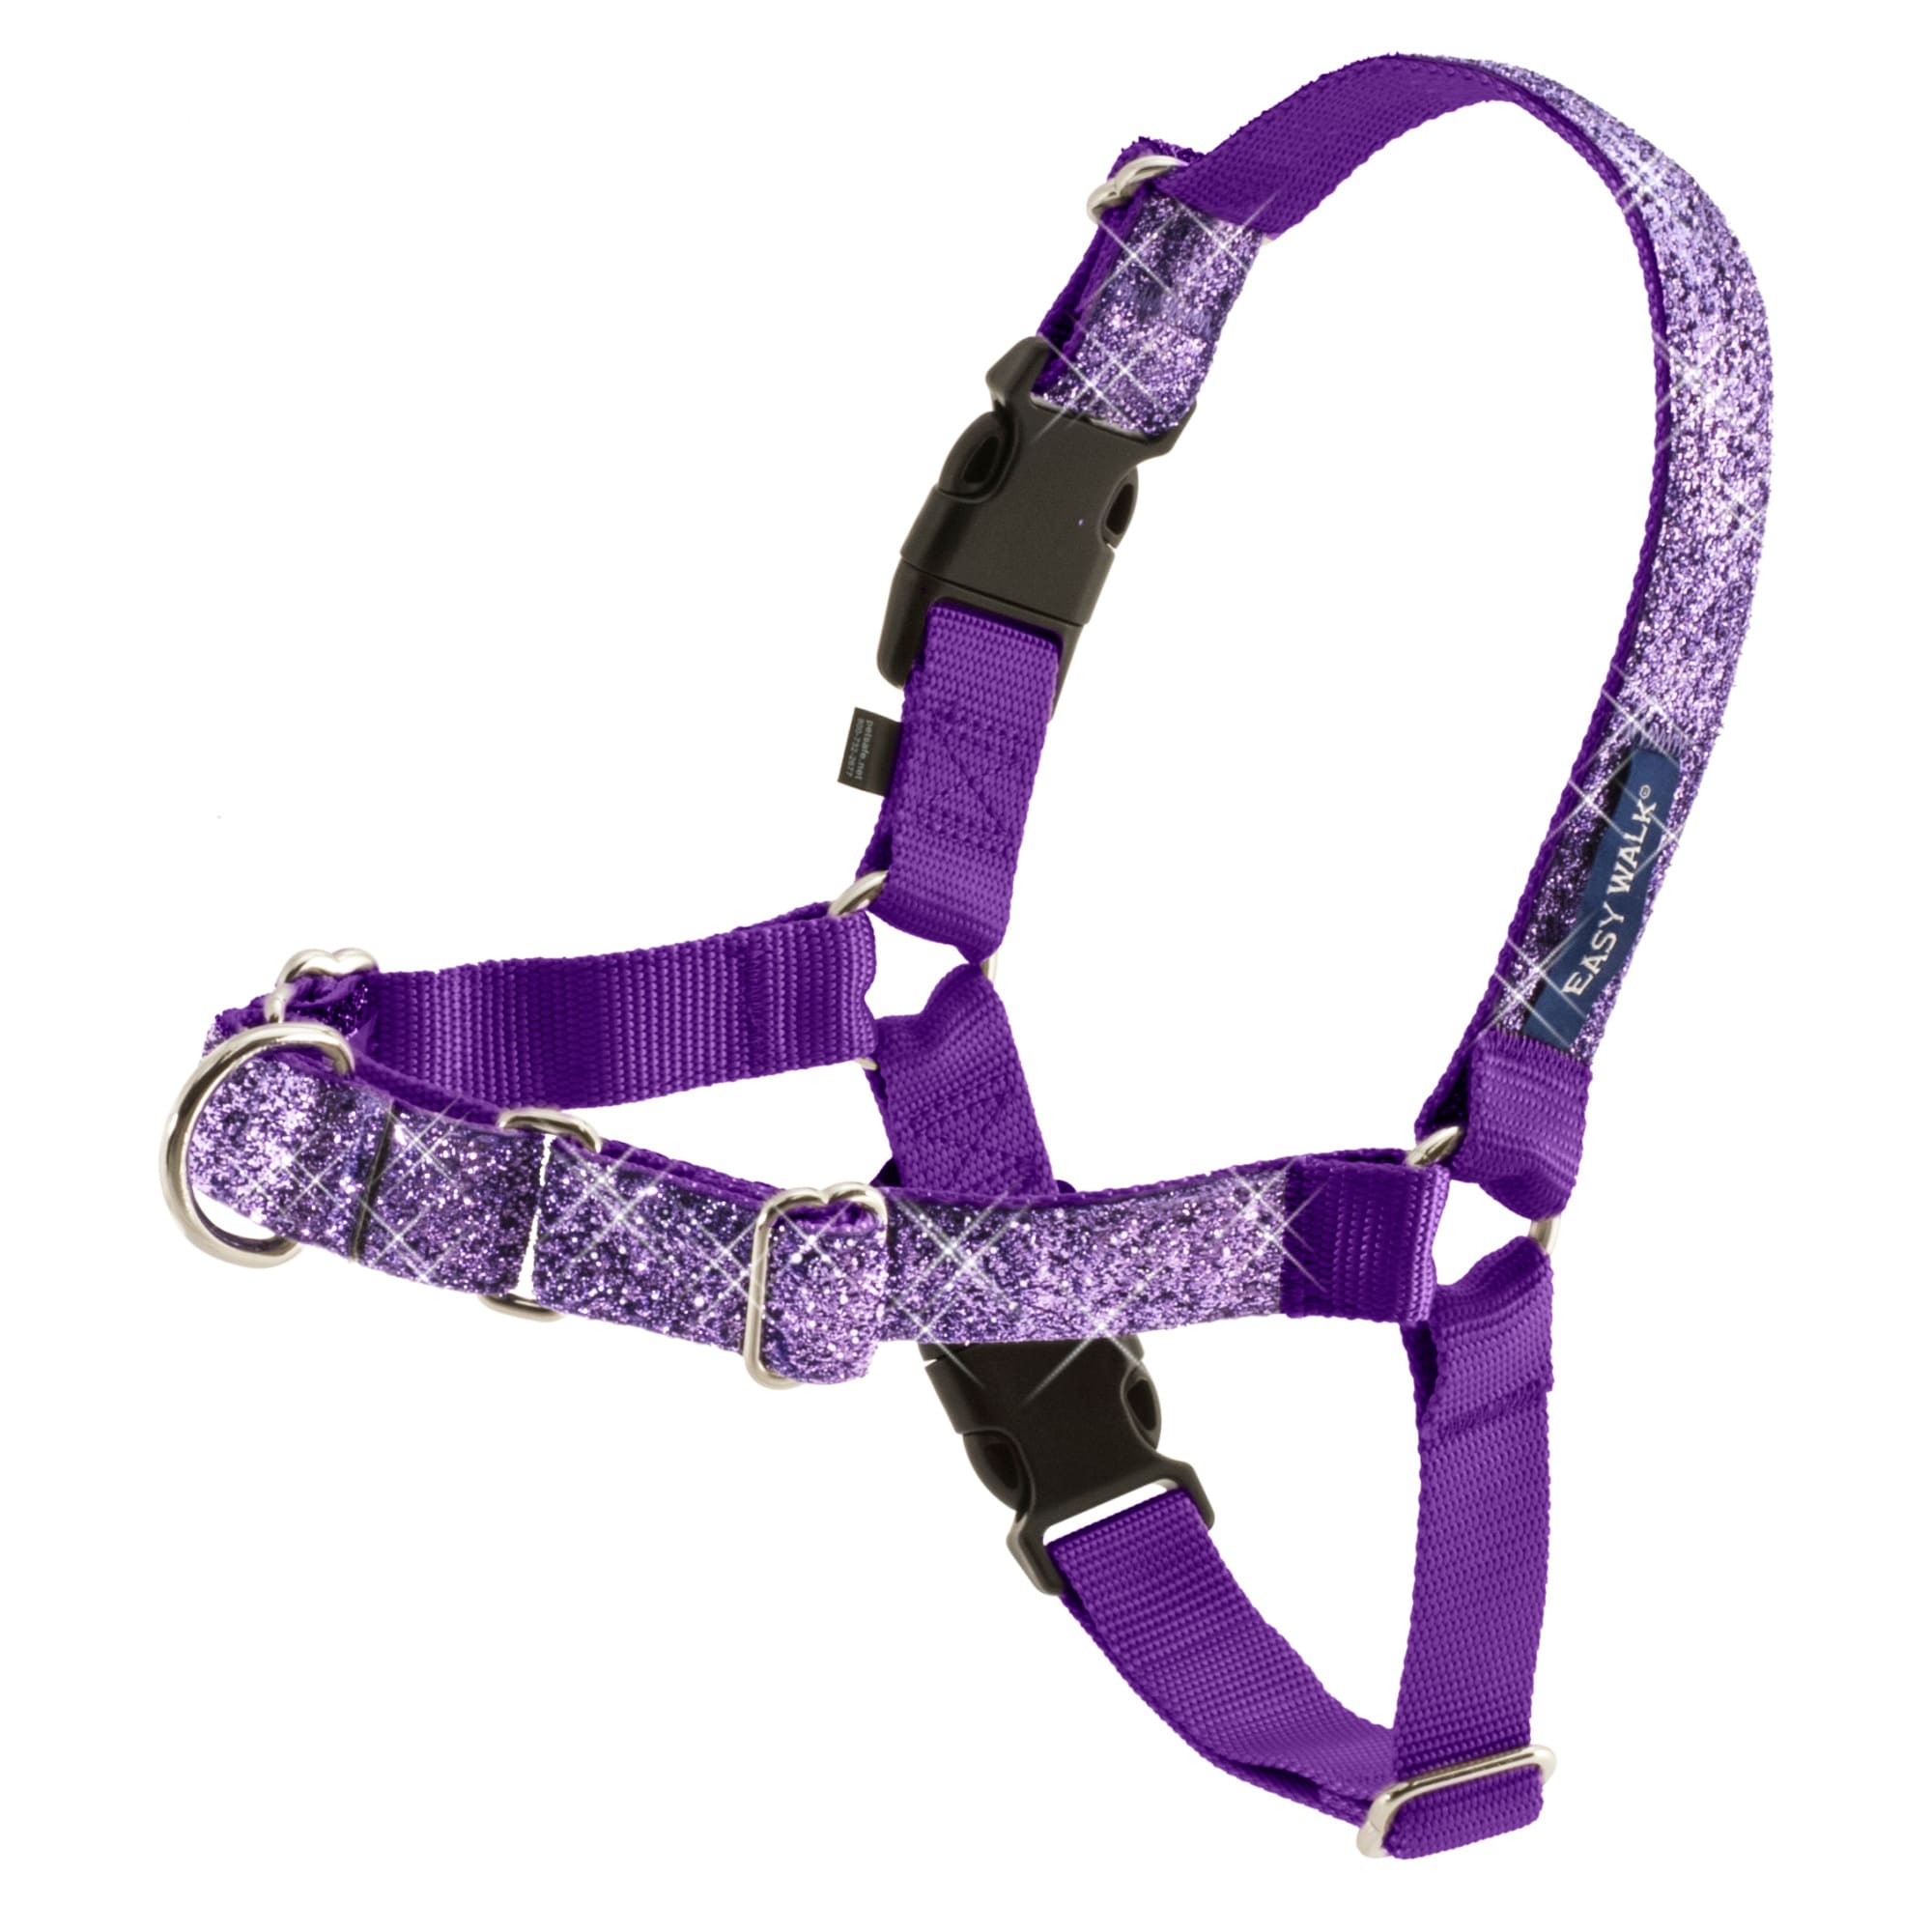 Petsafe Easy Walk Harness in Purple Bling, Large